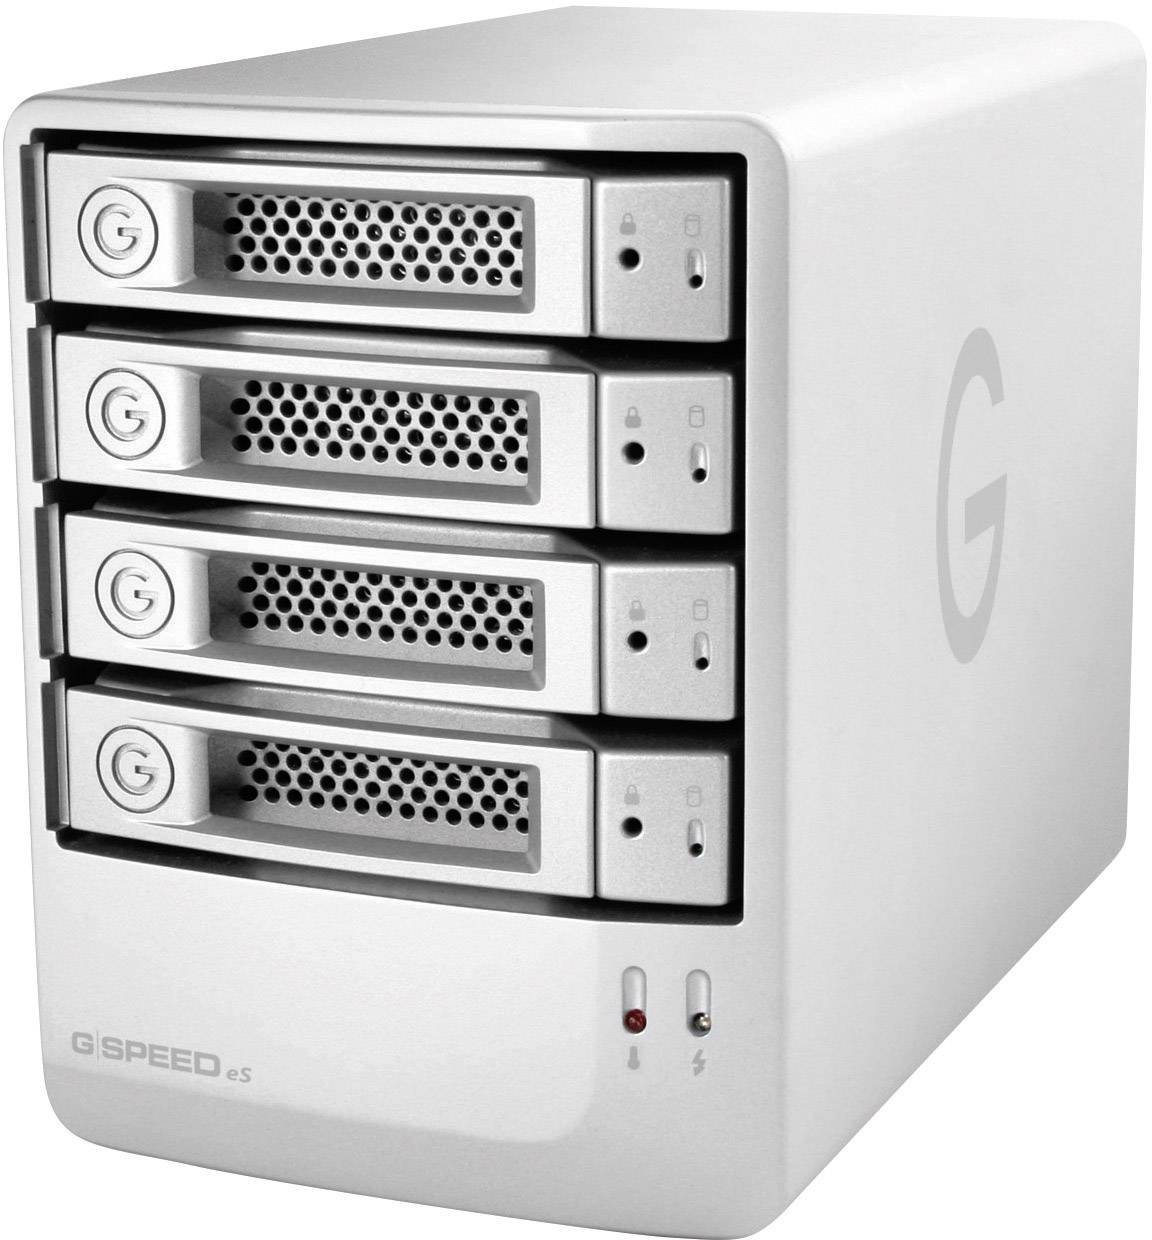 g technology external hard drive for mac review